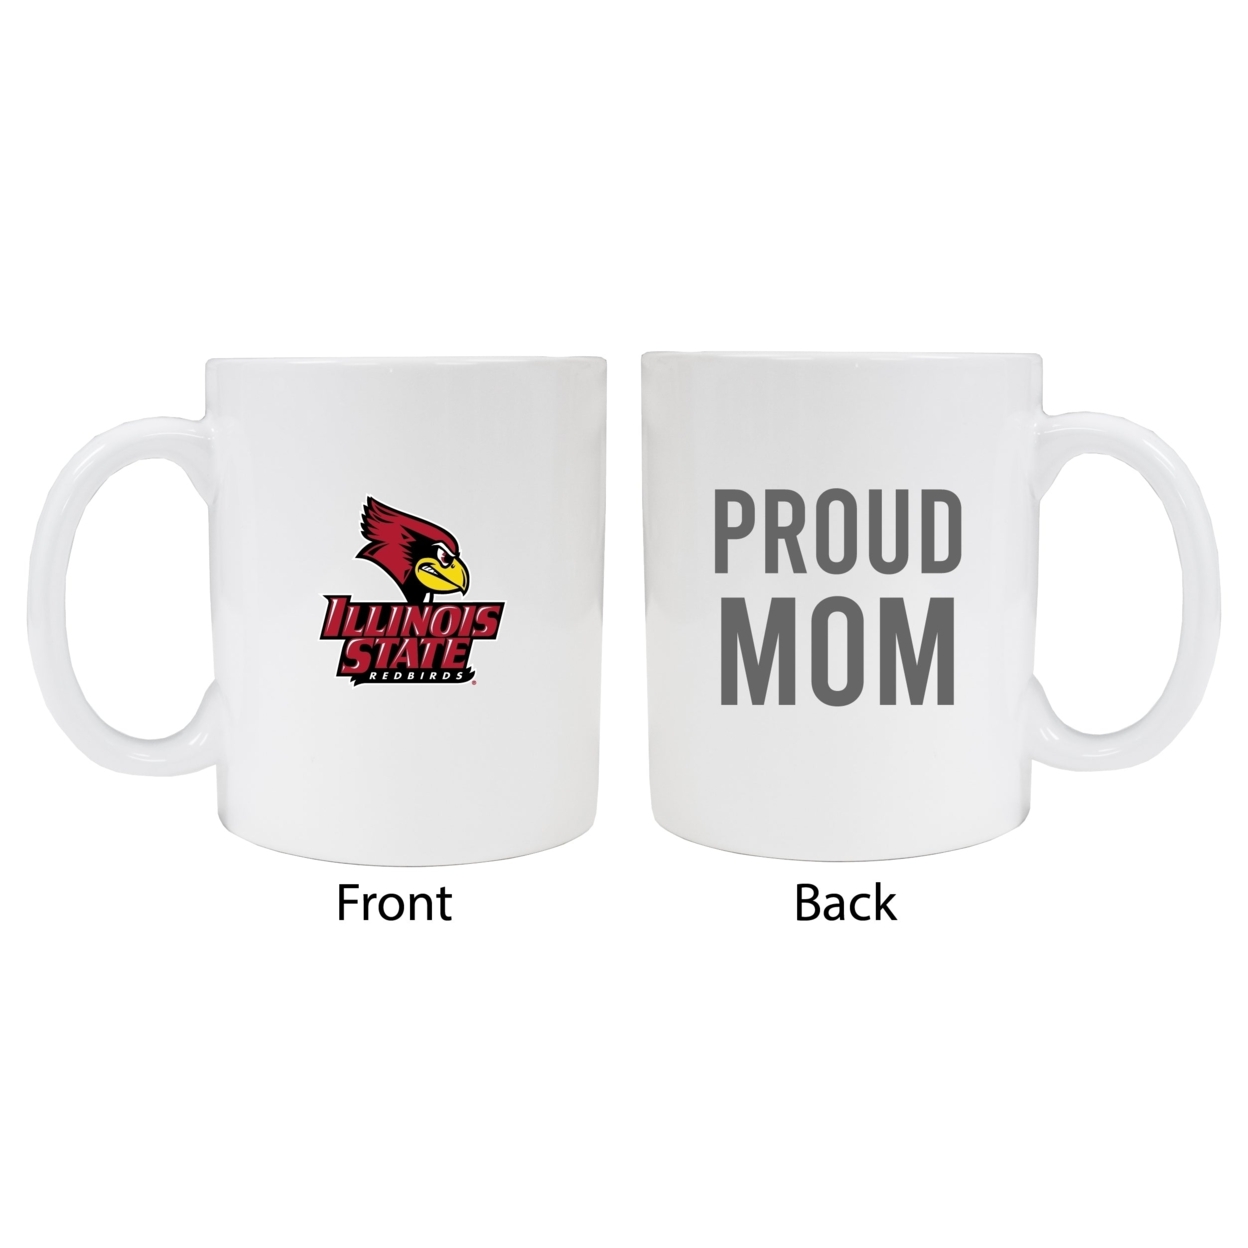 Illinois State Redbirds Proud Mom Ceramic Coffee Mug - White (2 Pack)